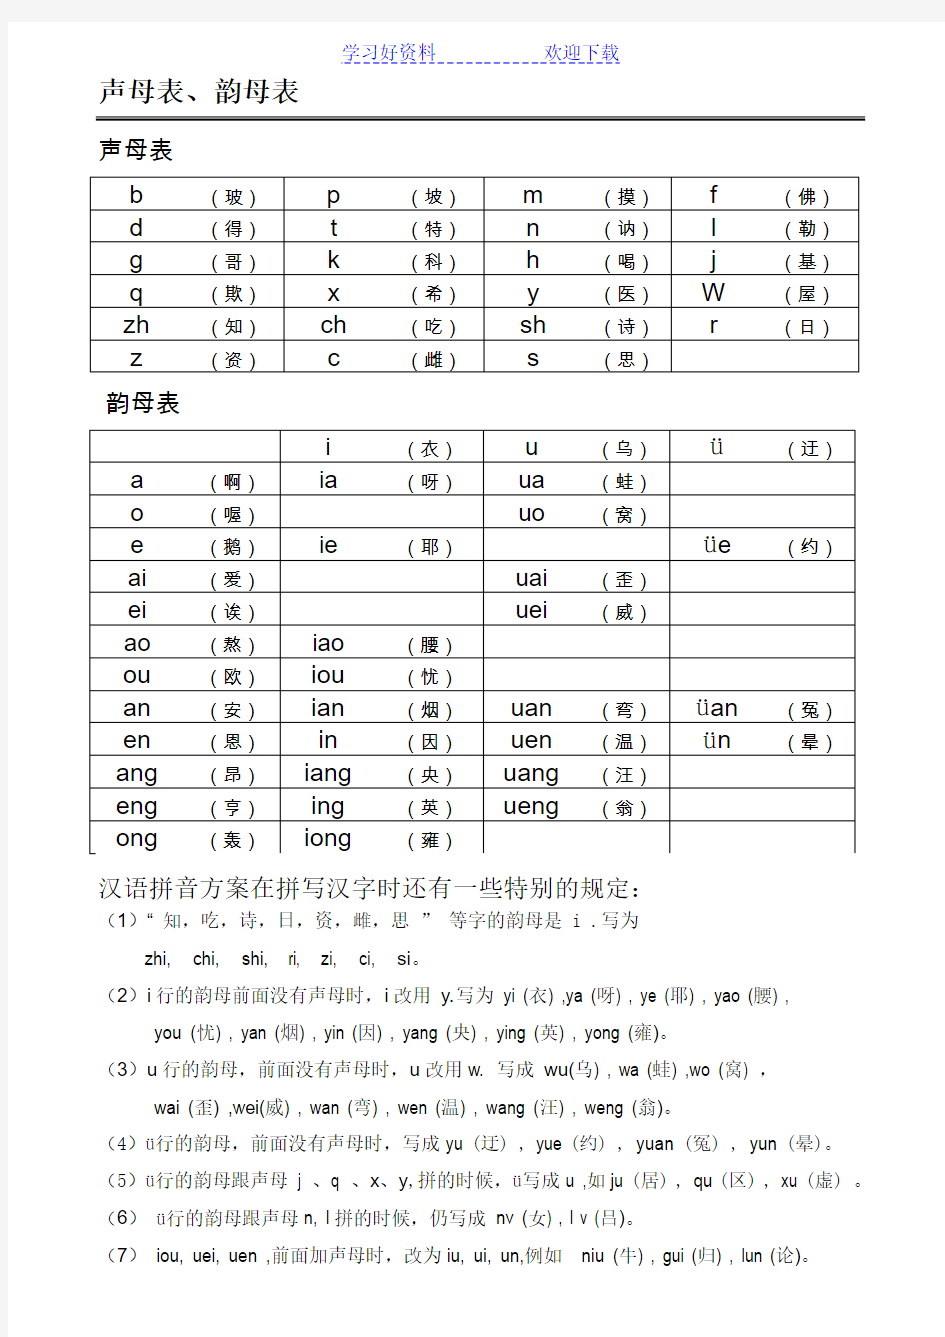 声母表和韵母表汉语拼音音节表(排版清晰内容准确,便于孩子或成人自学)